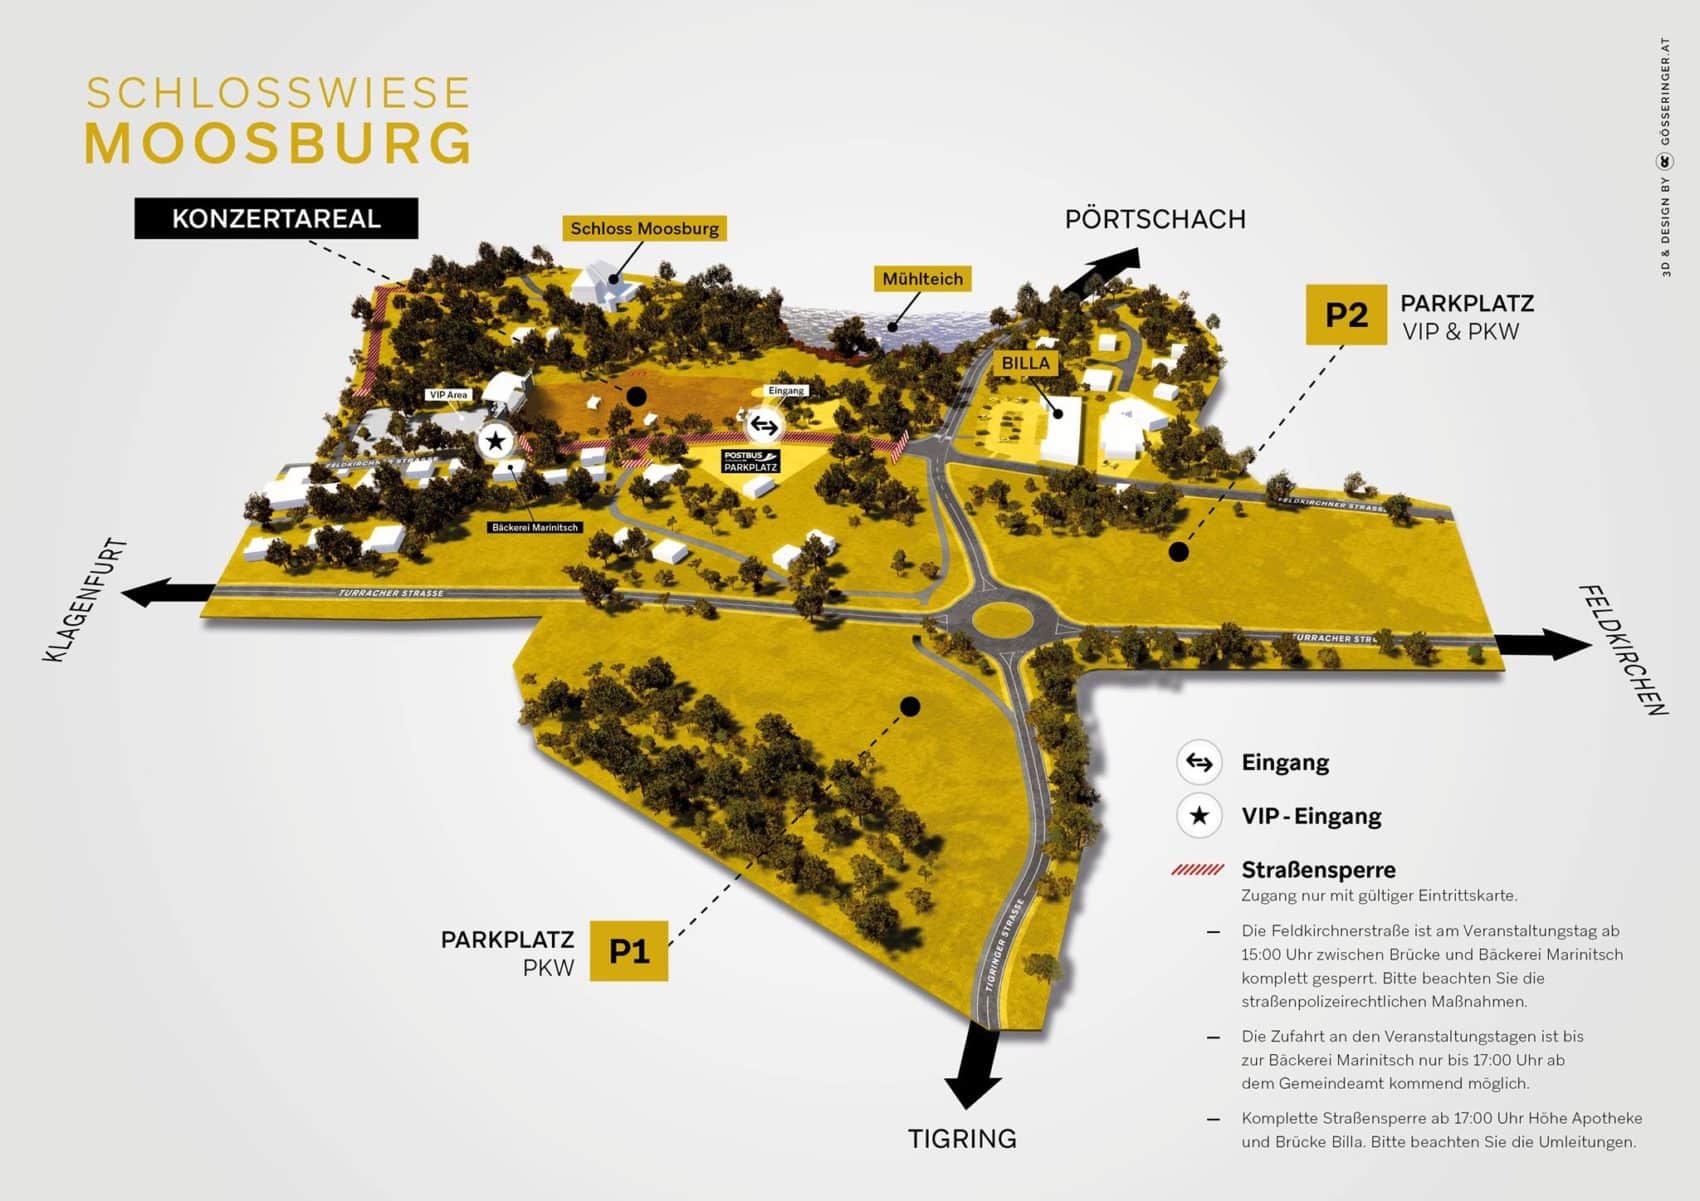 Die Schlosswiese in Moosburg liegt unter dem Schloss Moosburg und bietet durch die umliegenden Parkplätze und die anfahrenden Busse ideale Anreiseverhältnisse.